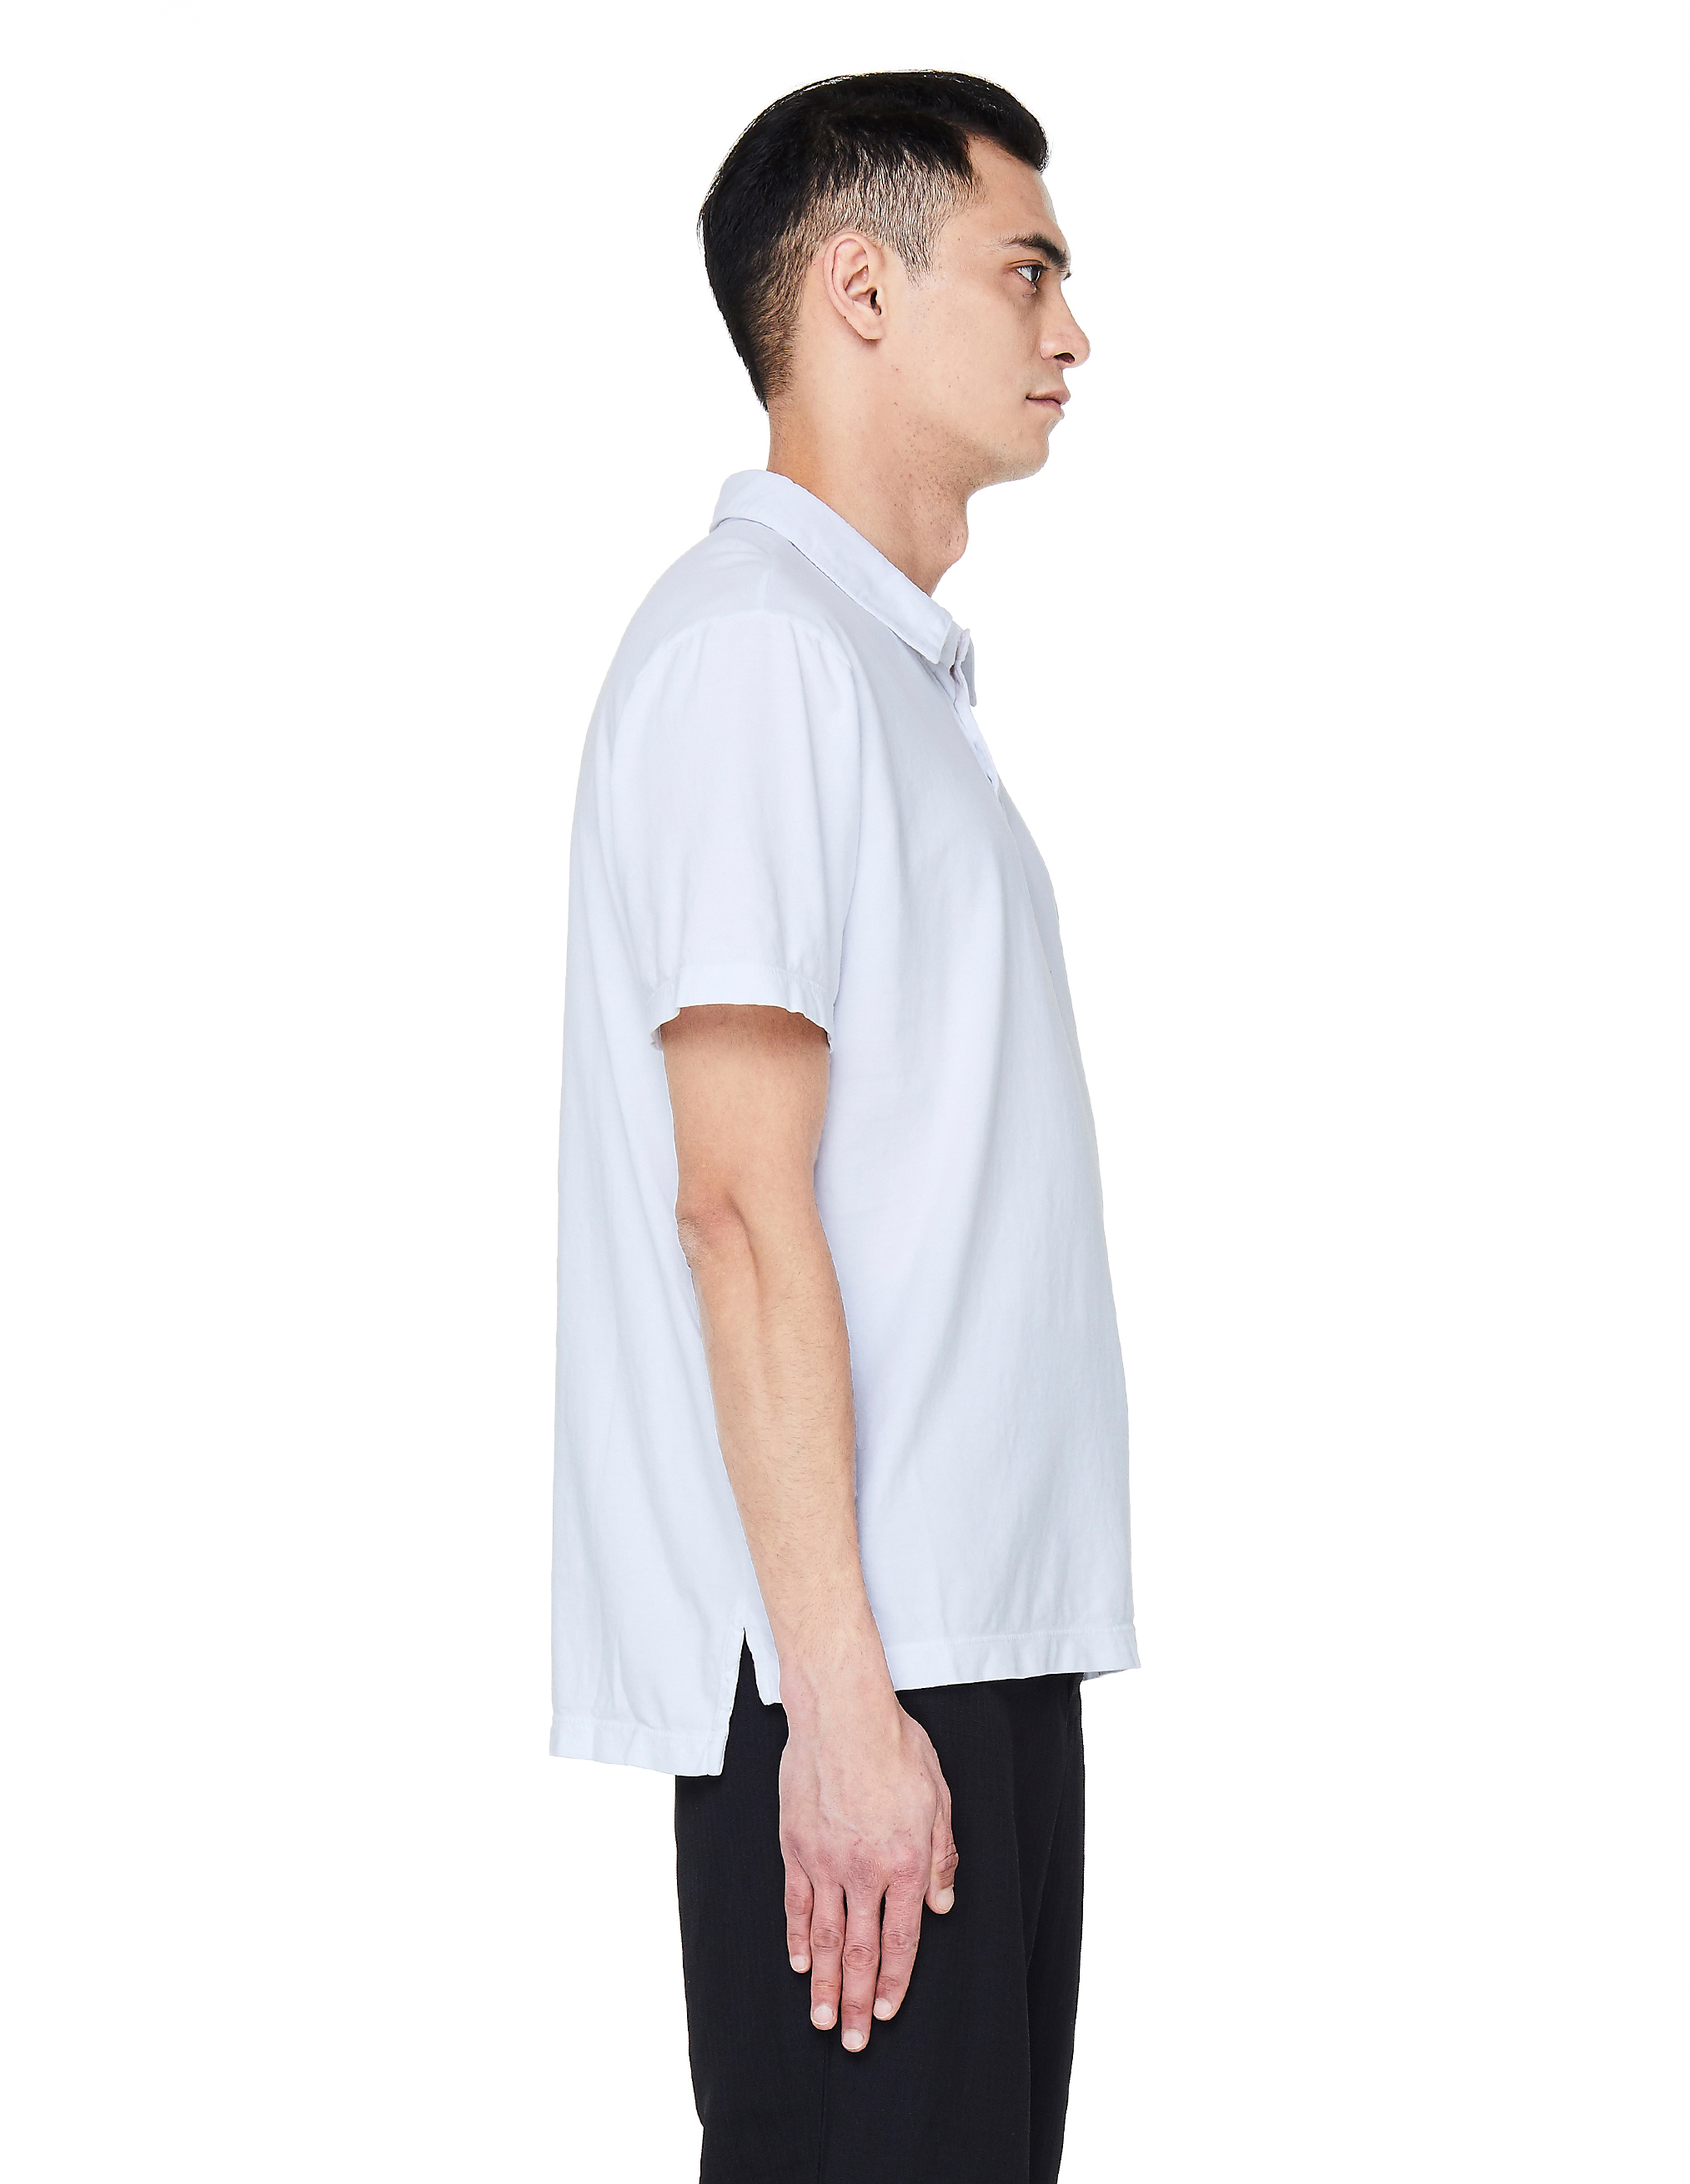 Белая хлопковая футболка-поло MSX3337/wht Фото 2